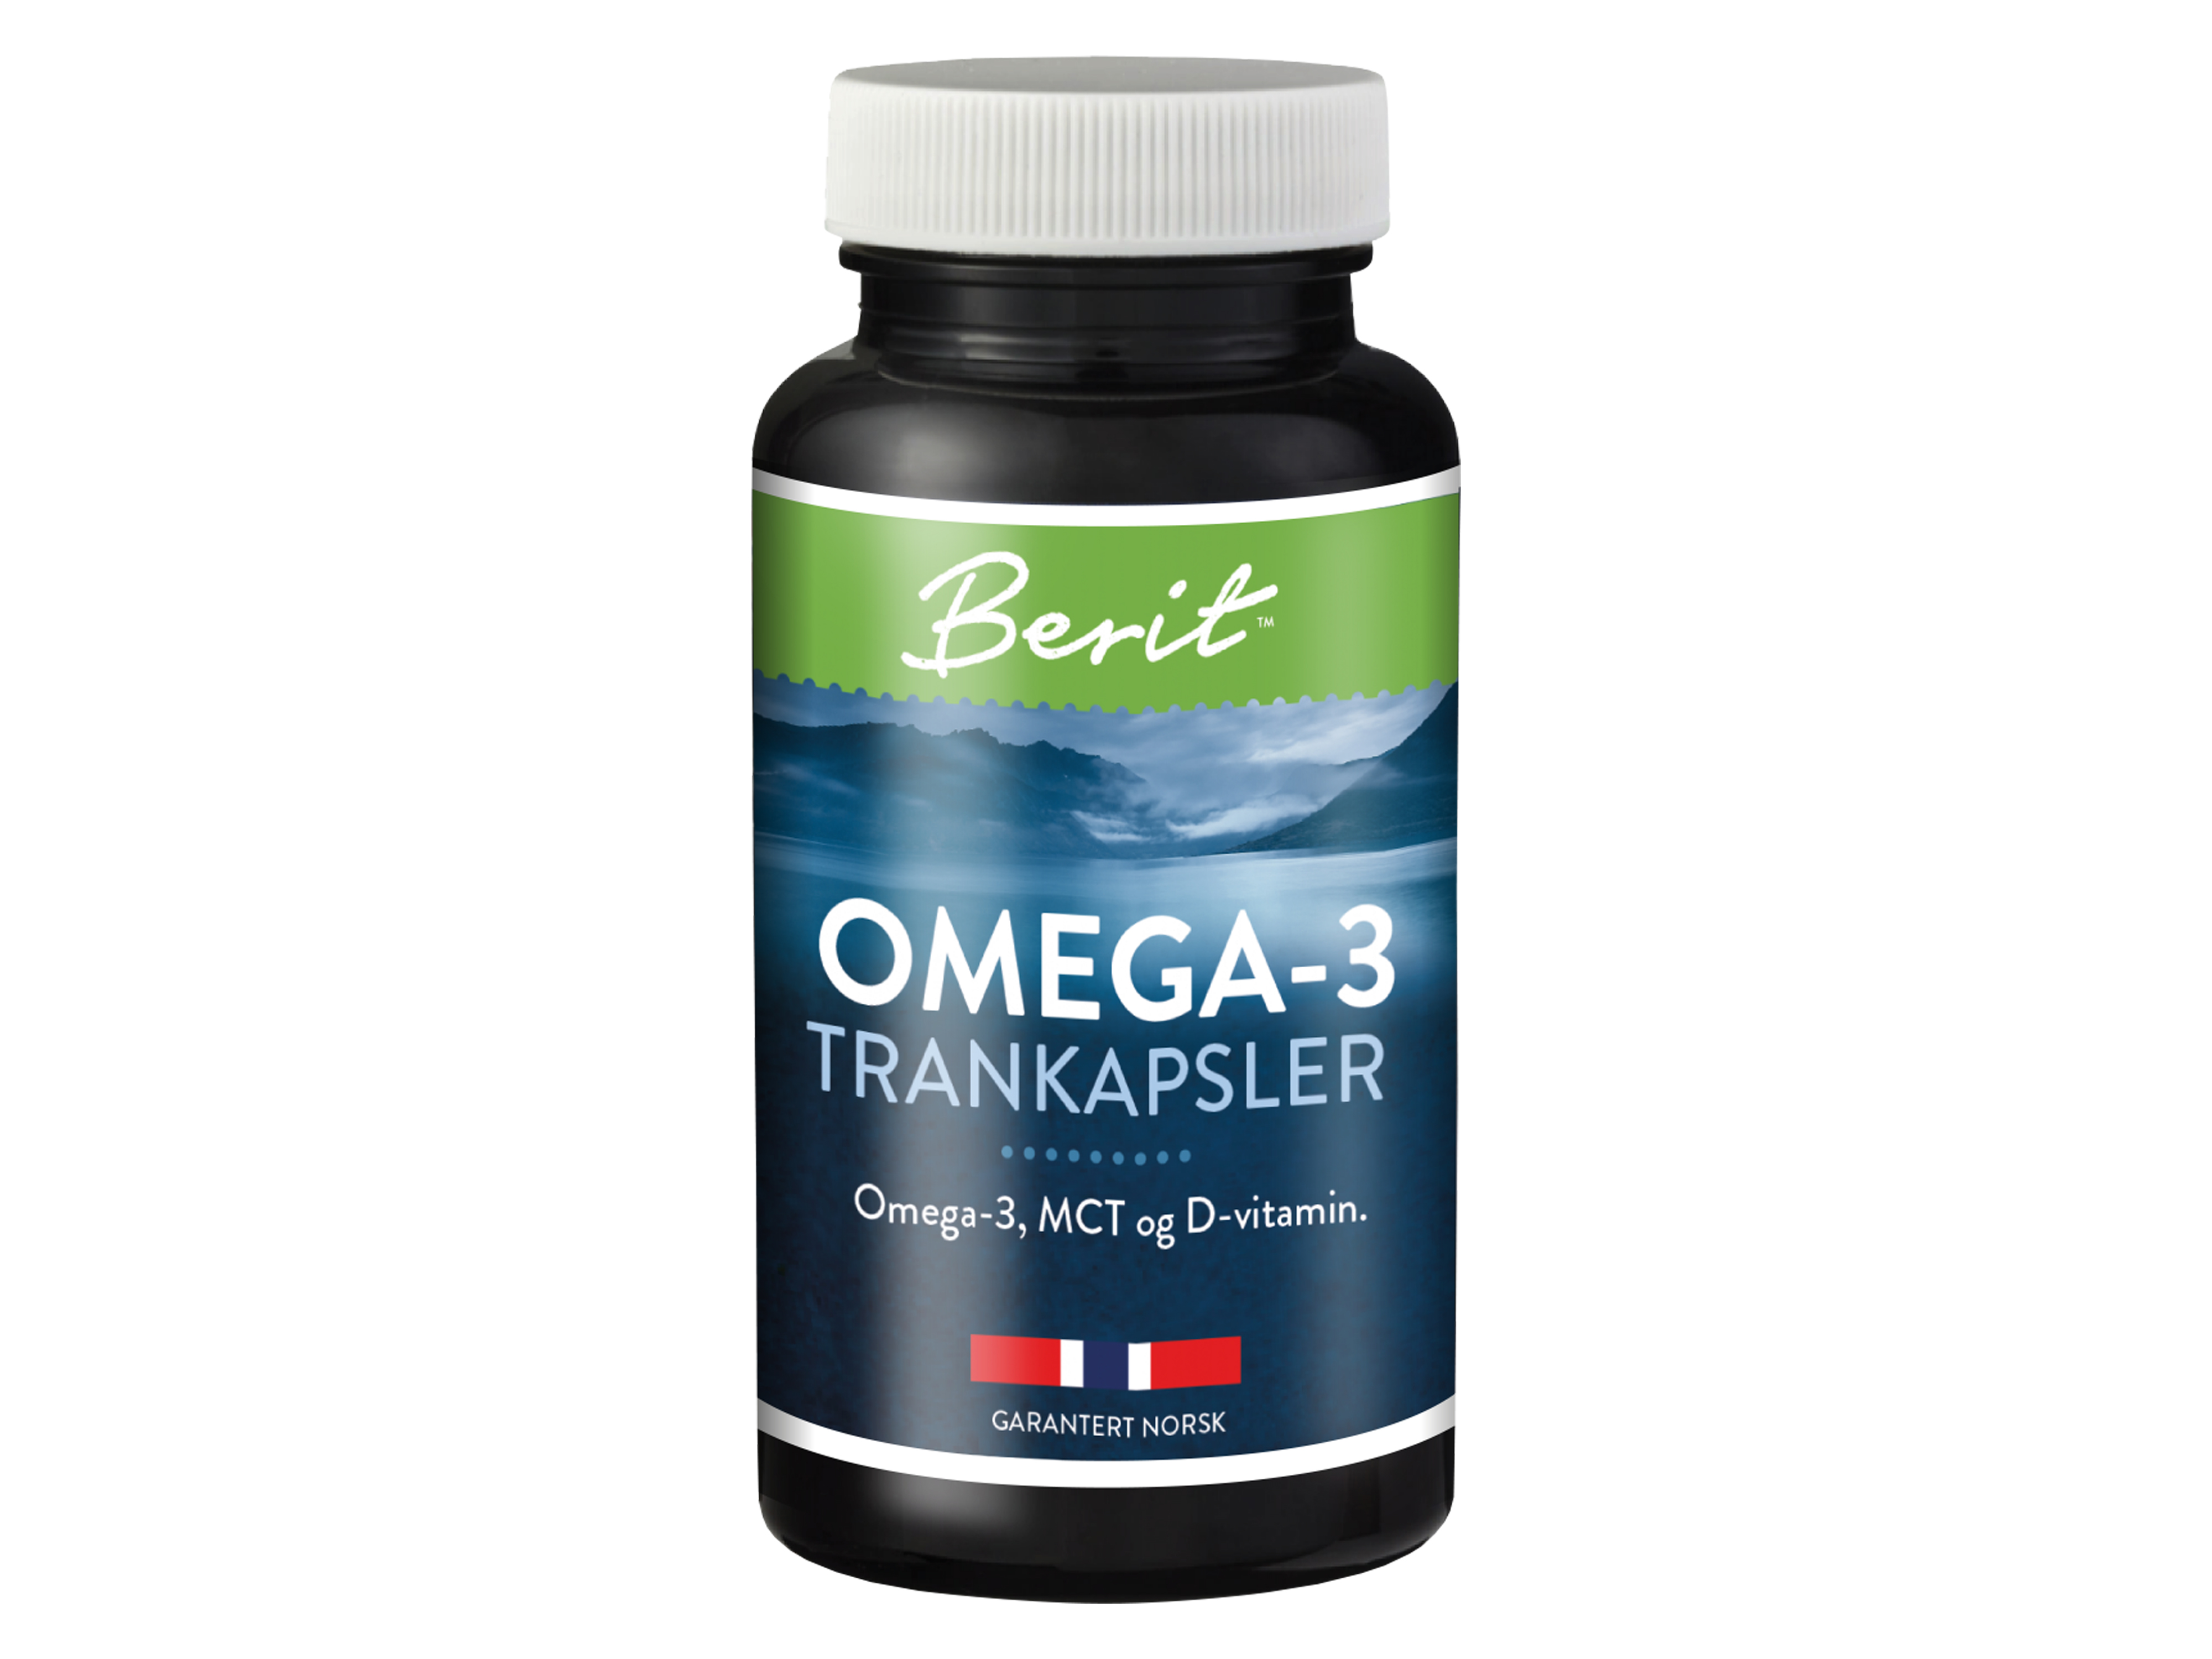 Berit Omega-3 trankapsler med MCT og D-vitamin, 60 kapsler